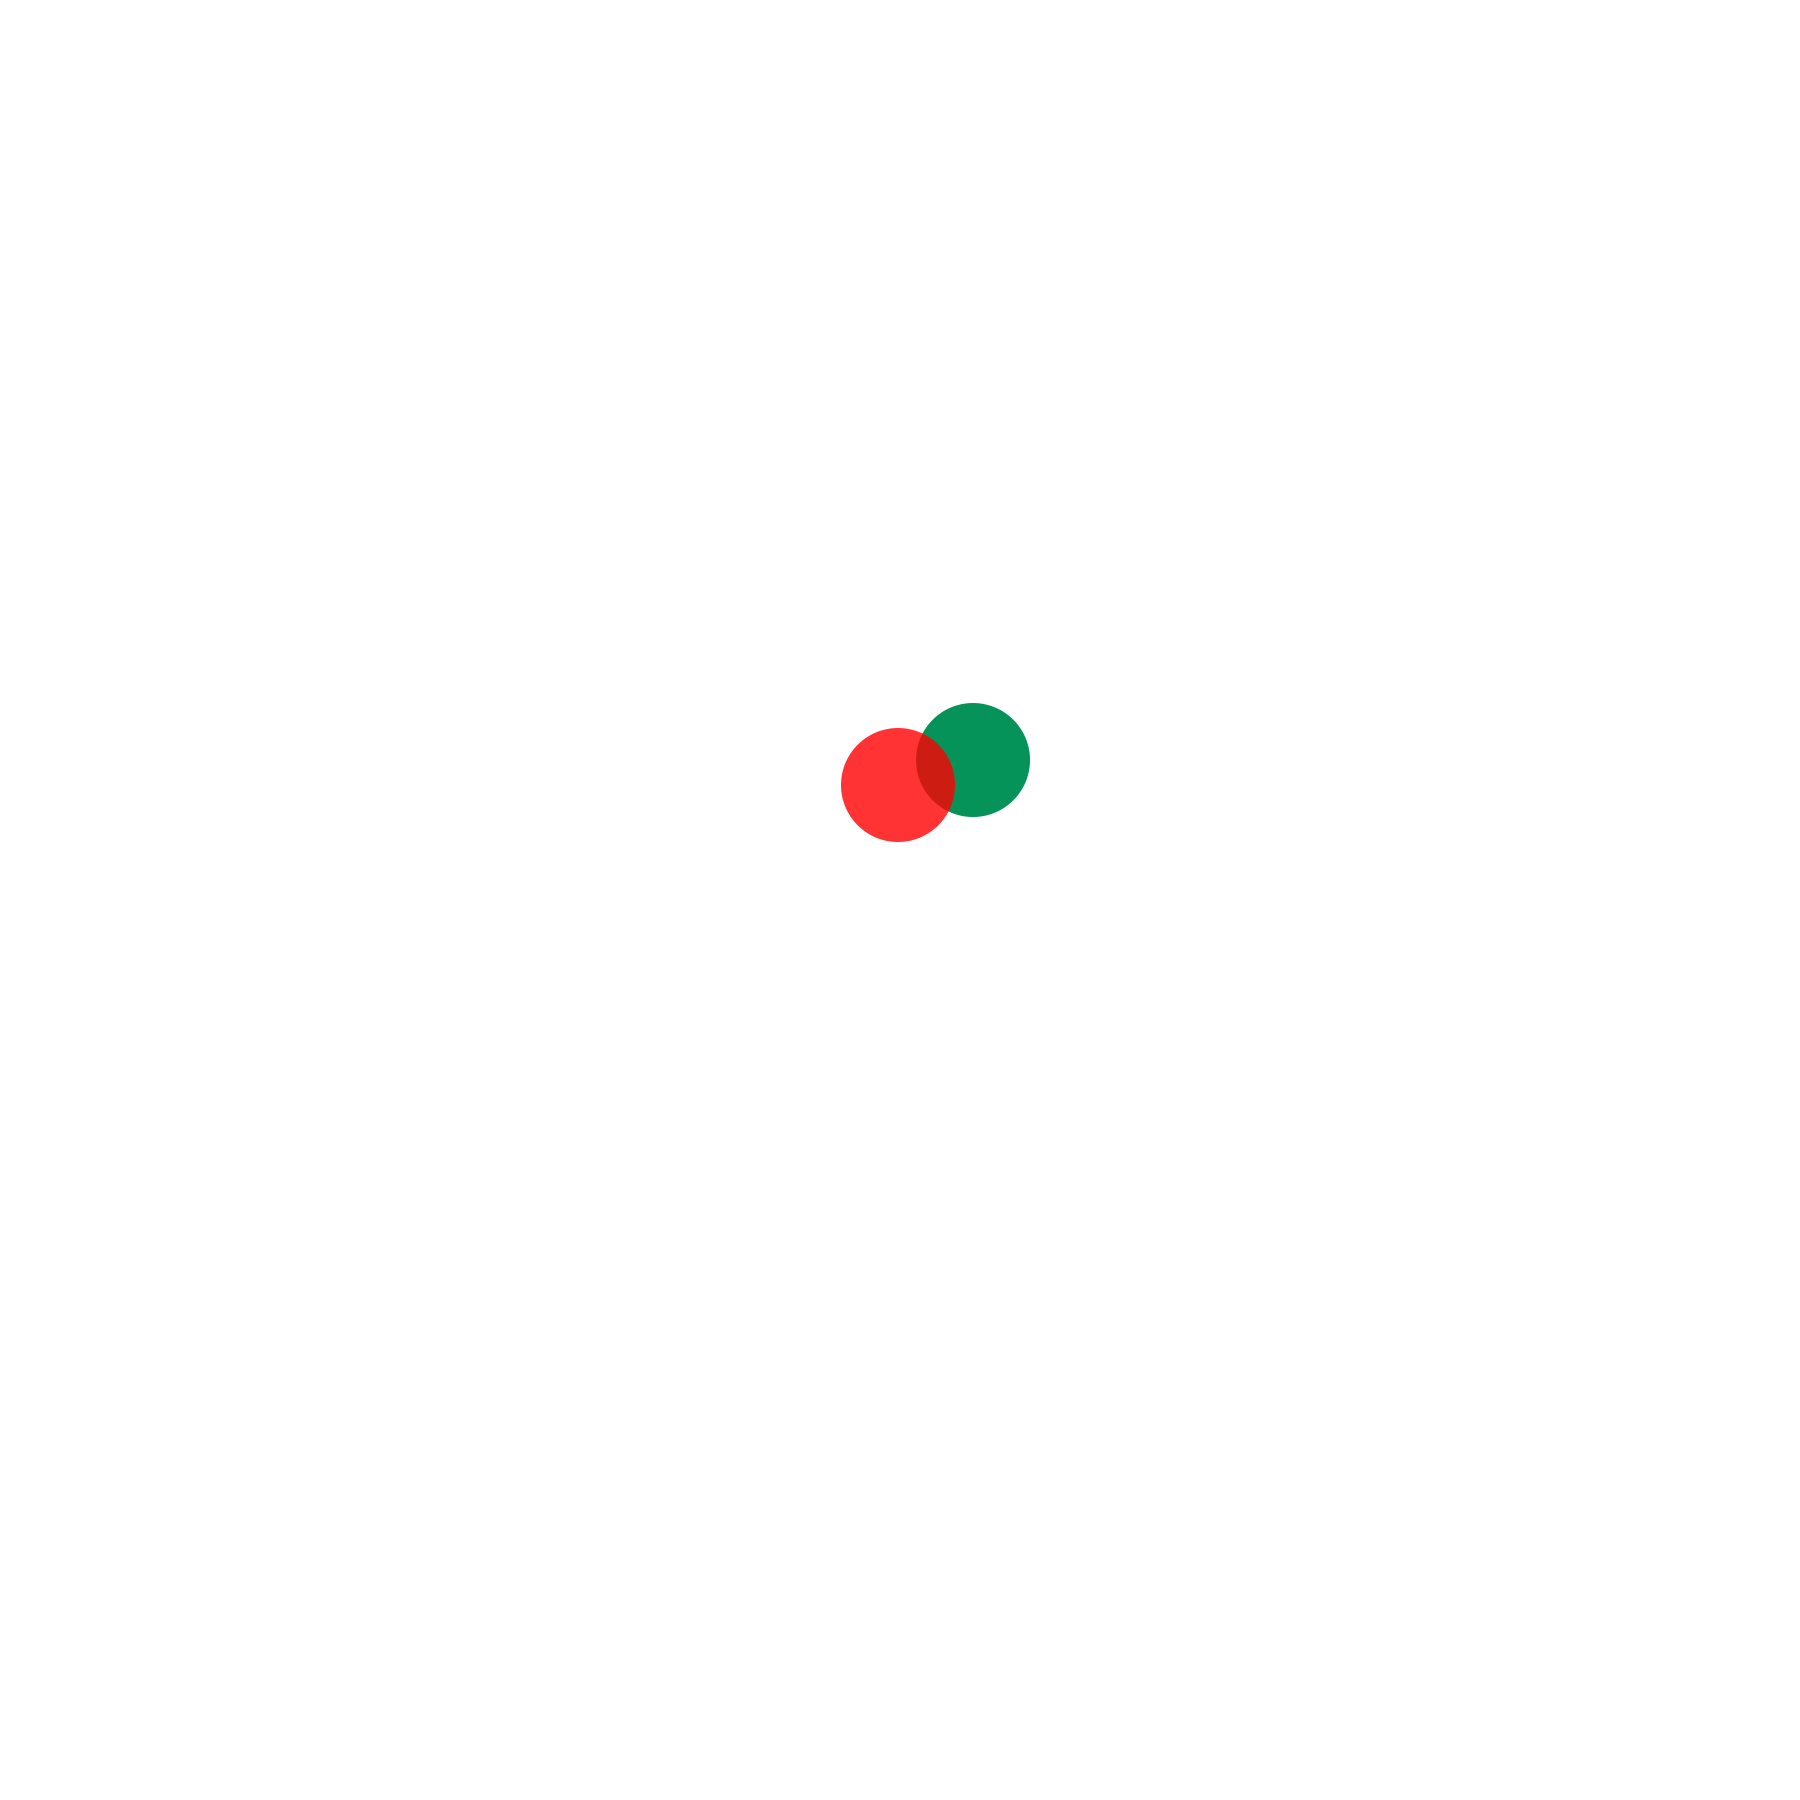 Ubuntu Agency